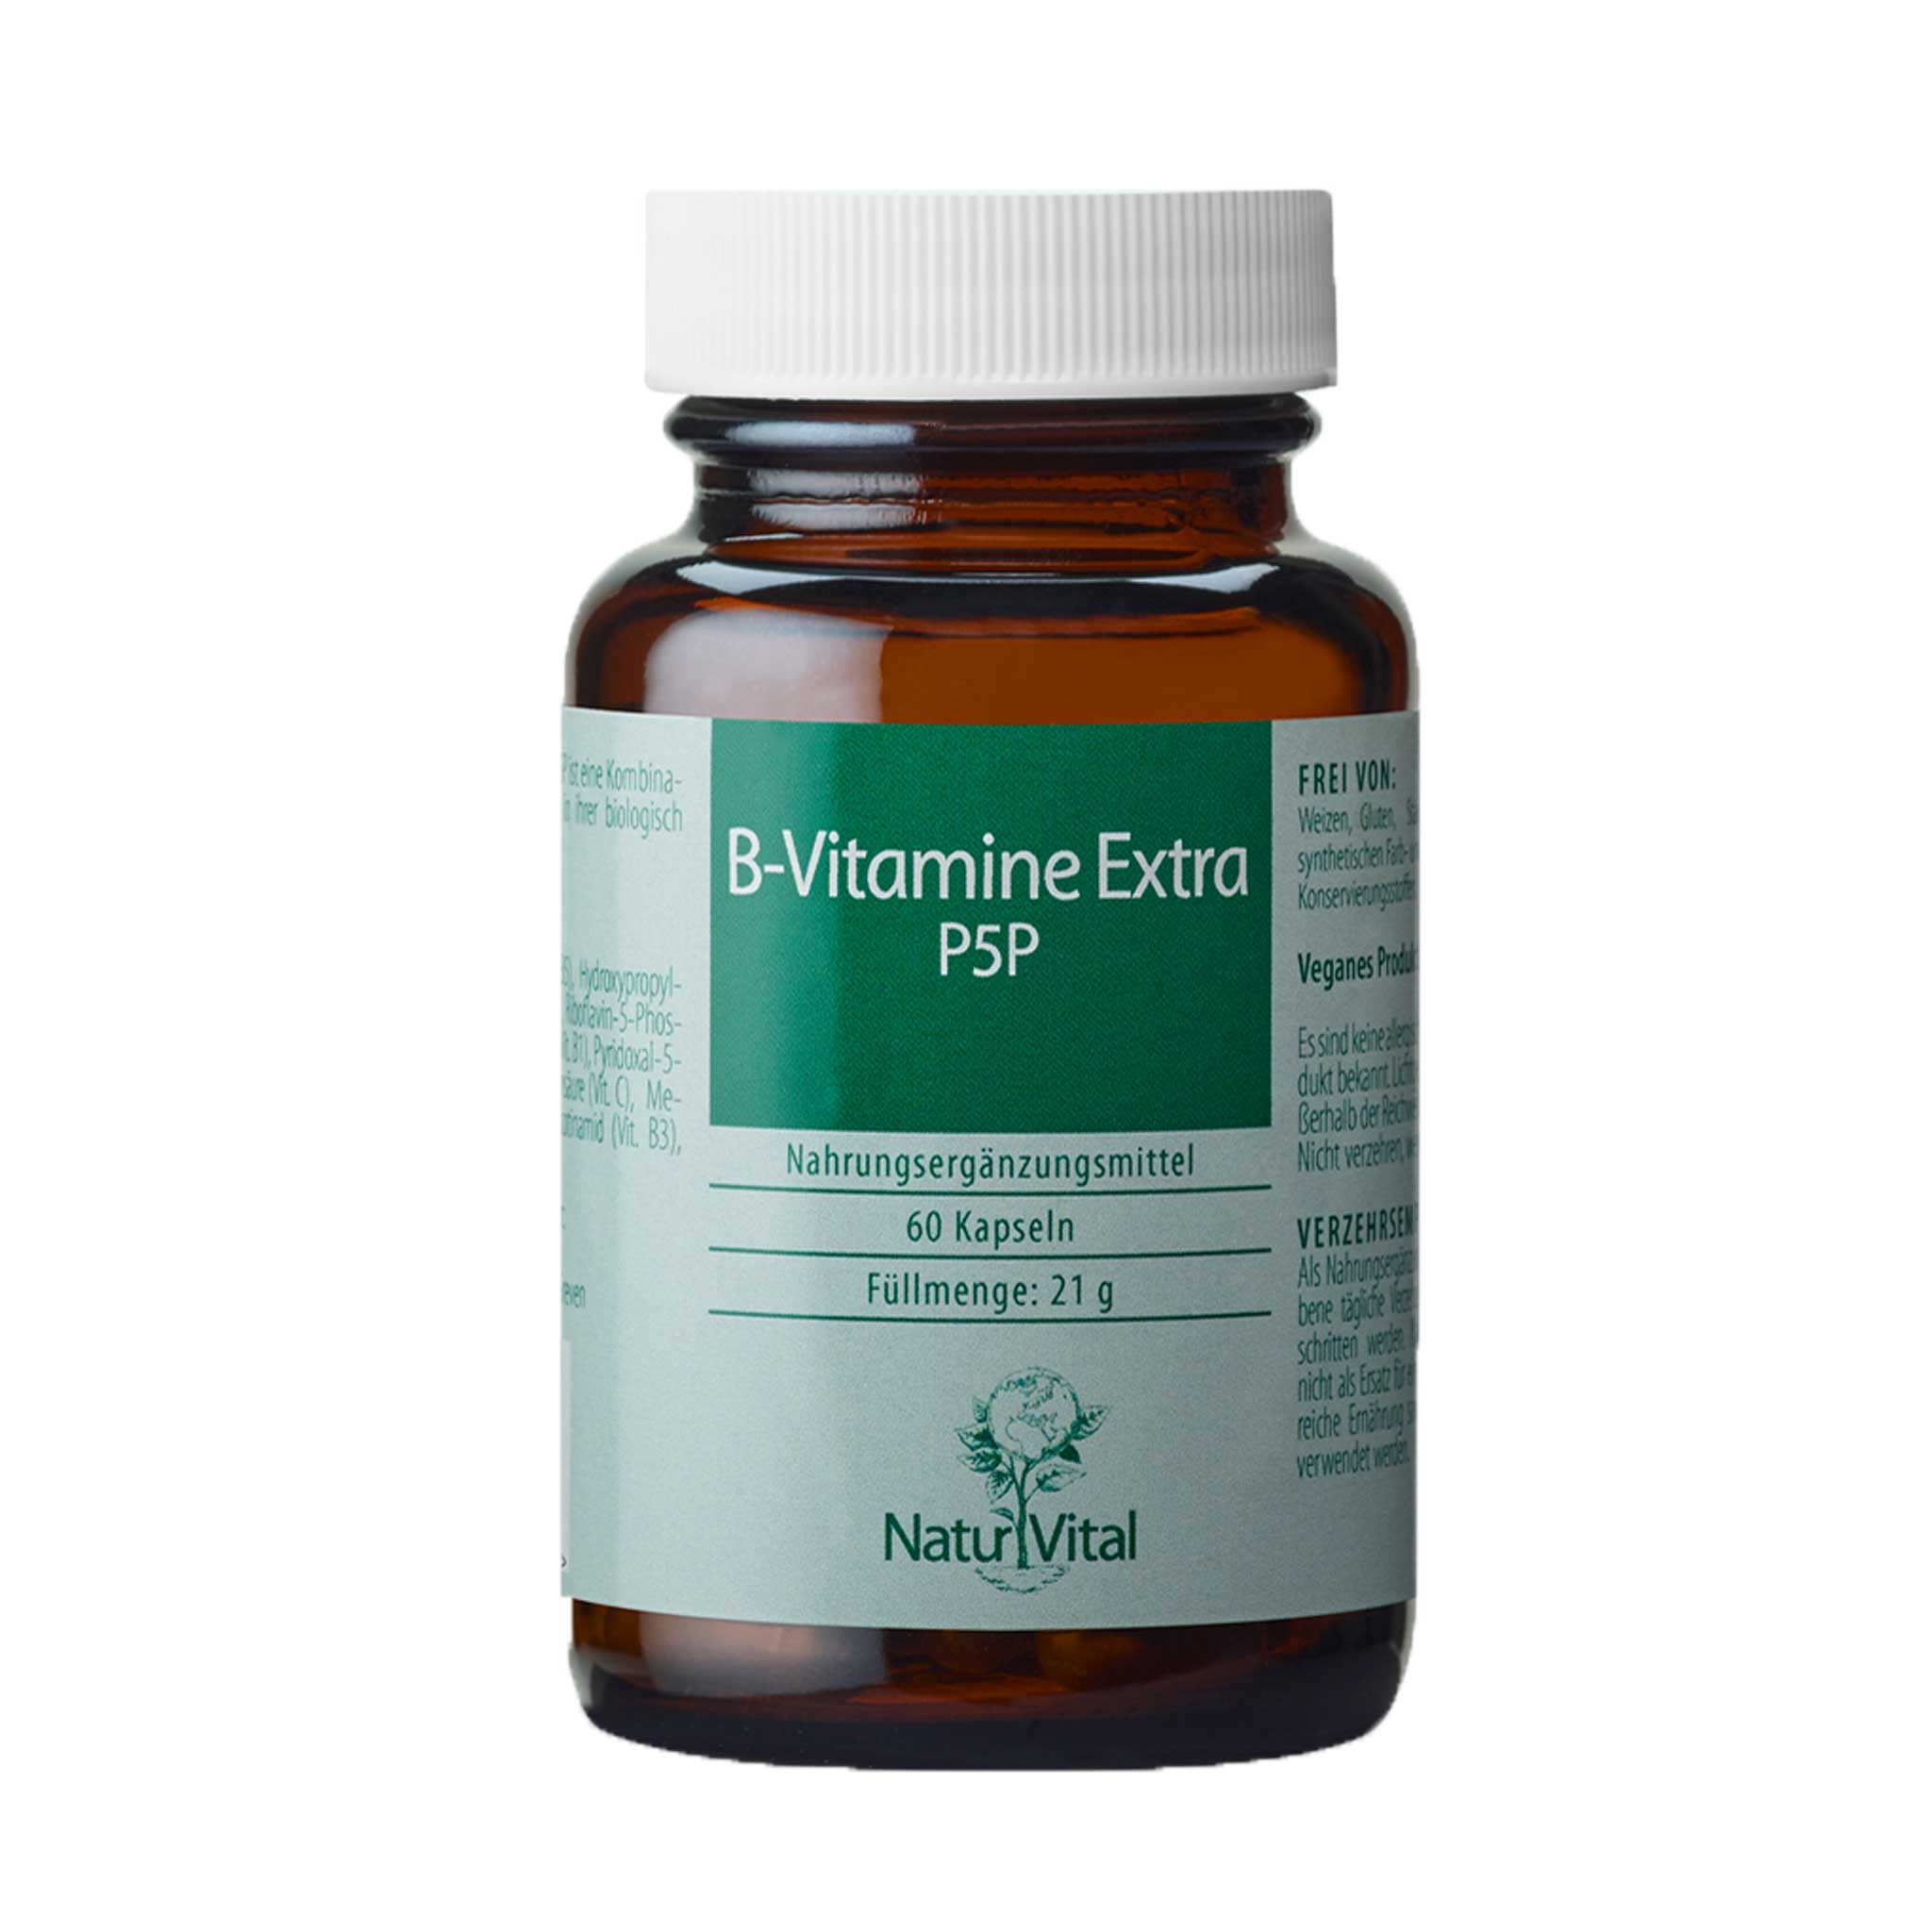 B Vitamine Extra P5P von Natur Vital beinhaltet 60 Kapseln